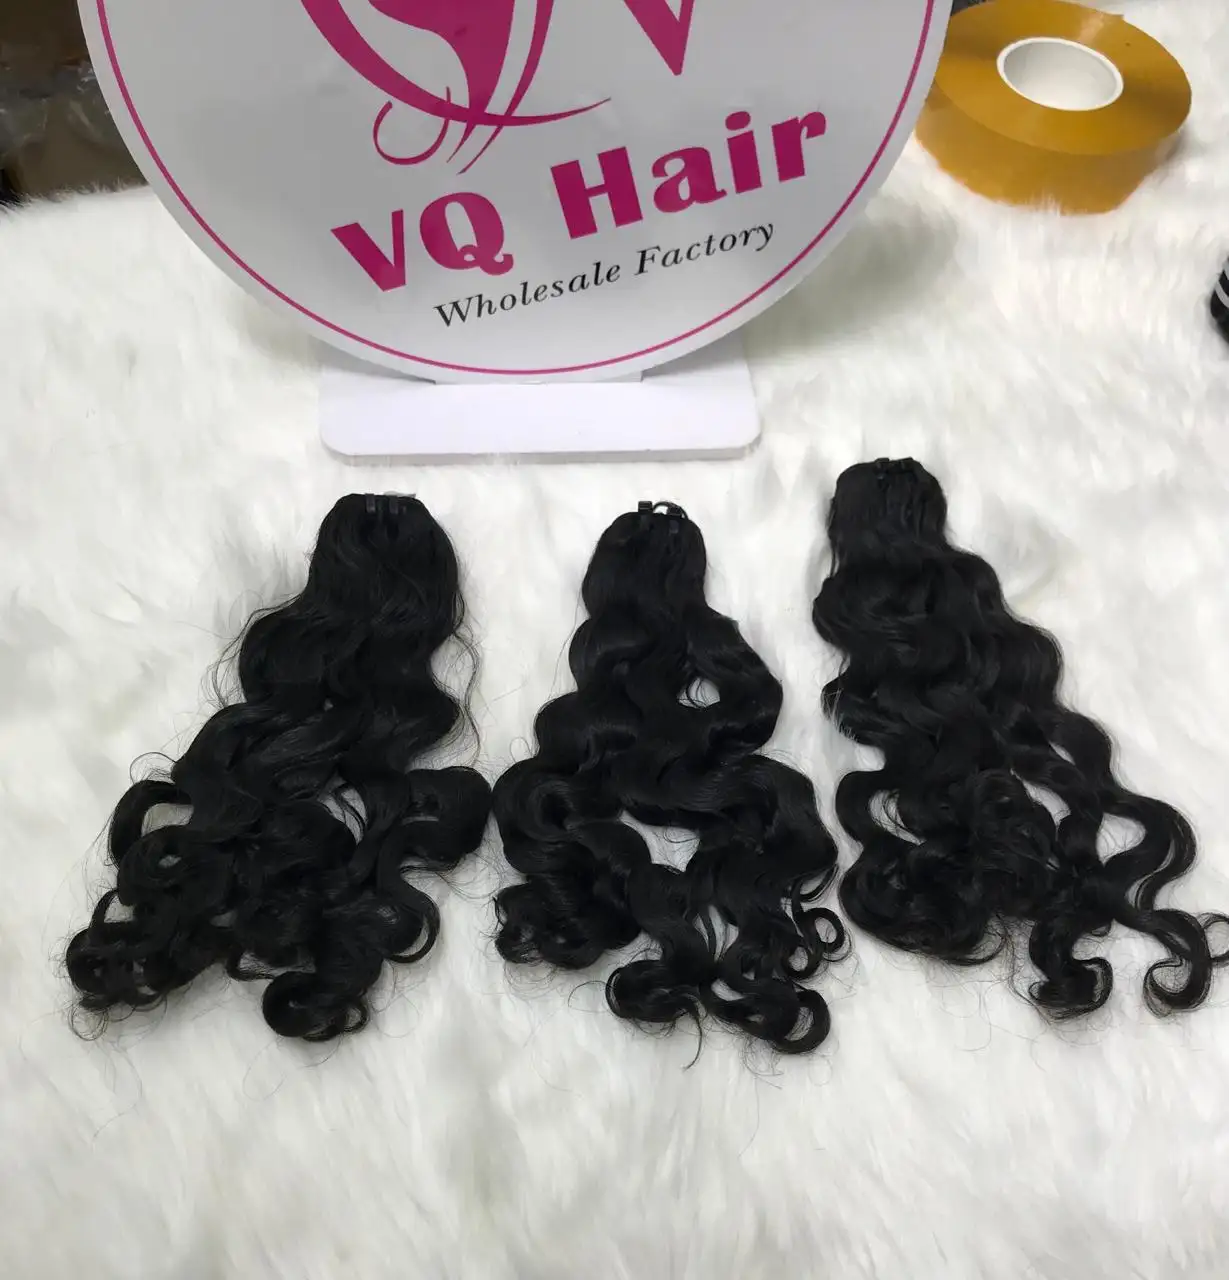 وصلات شعر فيتنامية متموجة كاملة تناسب البشرة خام غير معالجة حتى 18 بوصة من GDYhair من شركة VQ